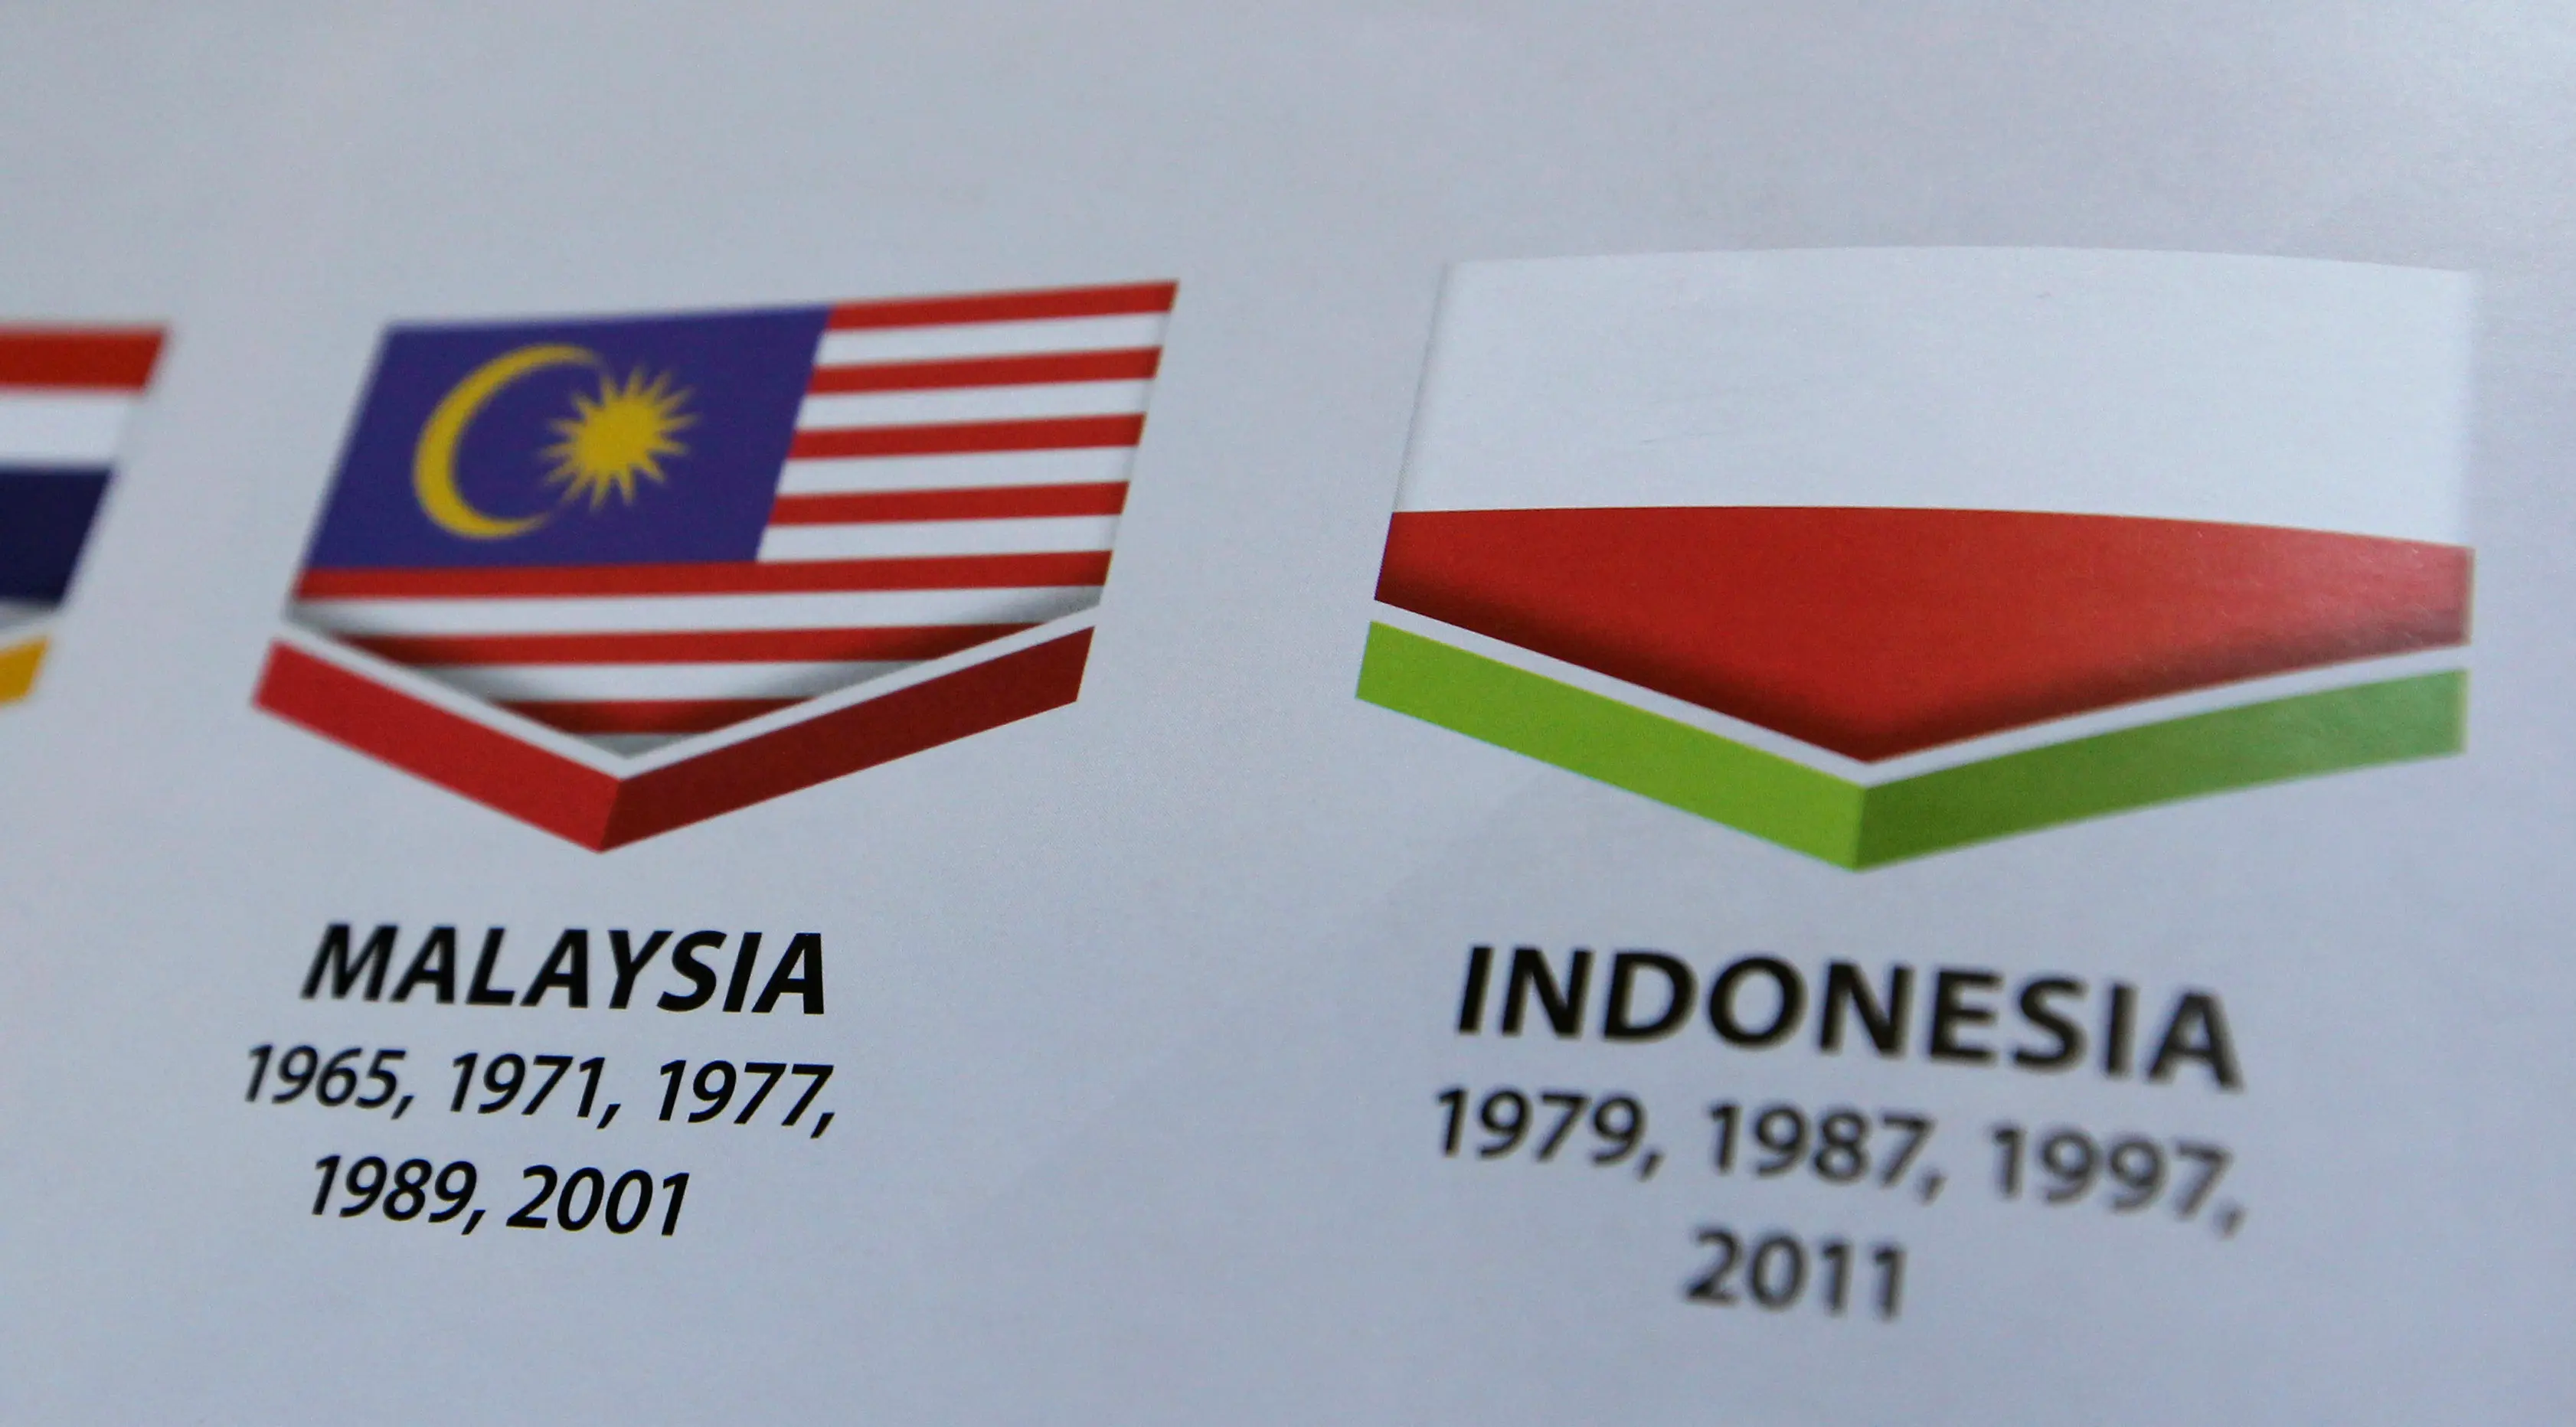 Bendera Indonesia tercetak terbalik pada buku panduan yang dibagikan dalam pembukaan SEA Games 2017. (AP Photo/Yau)